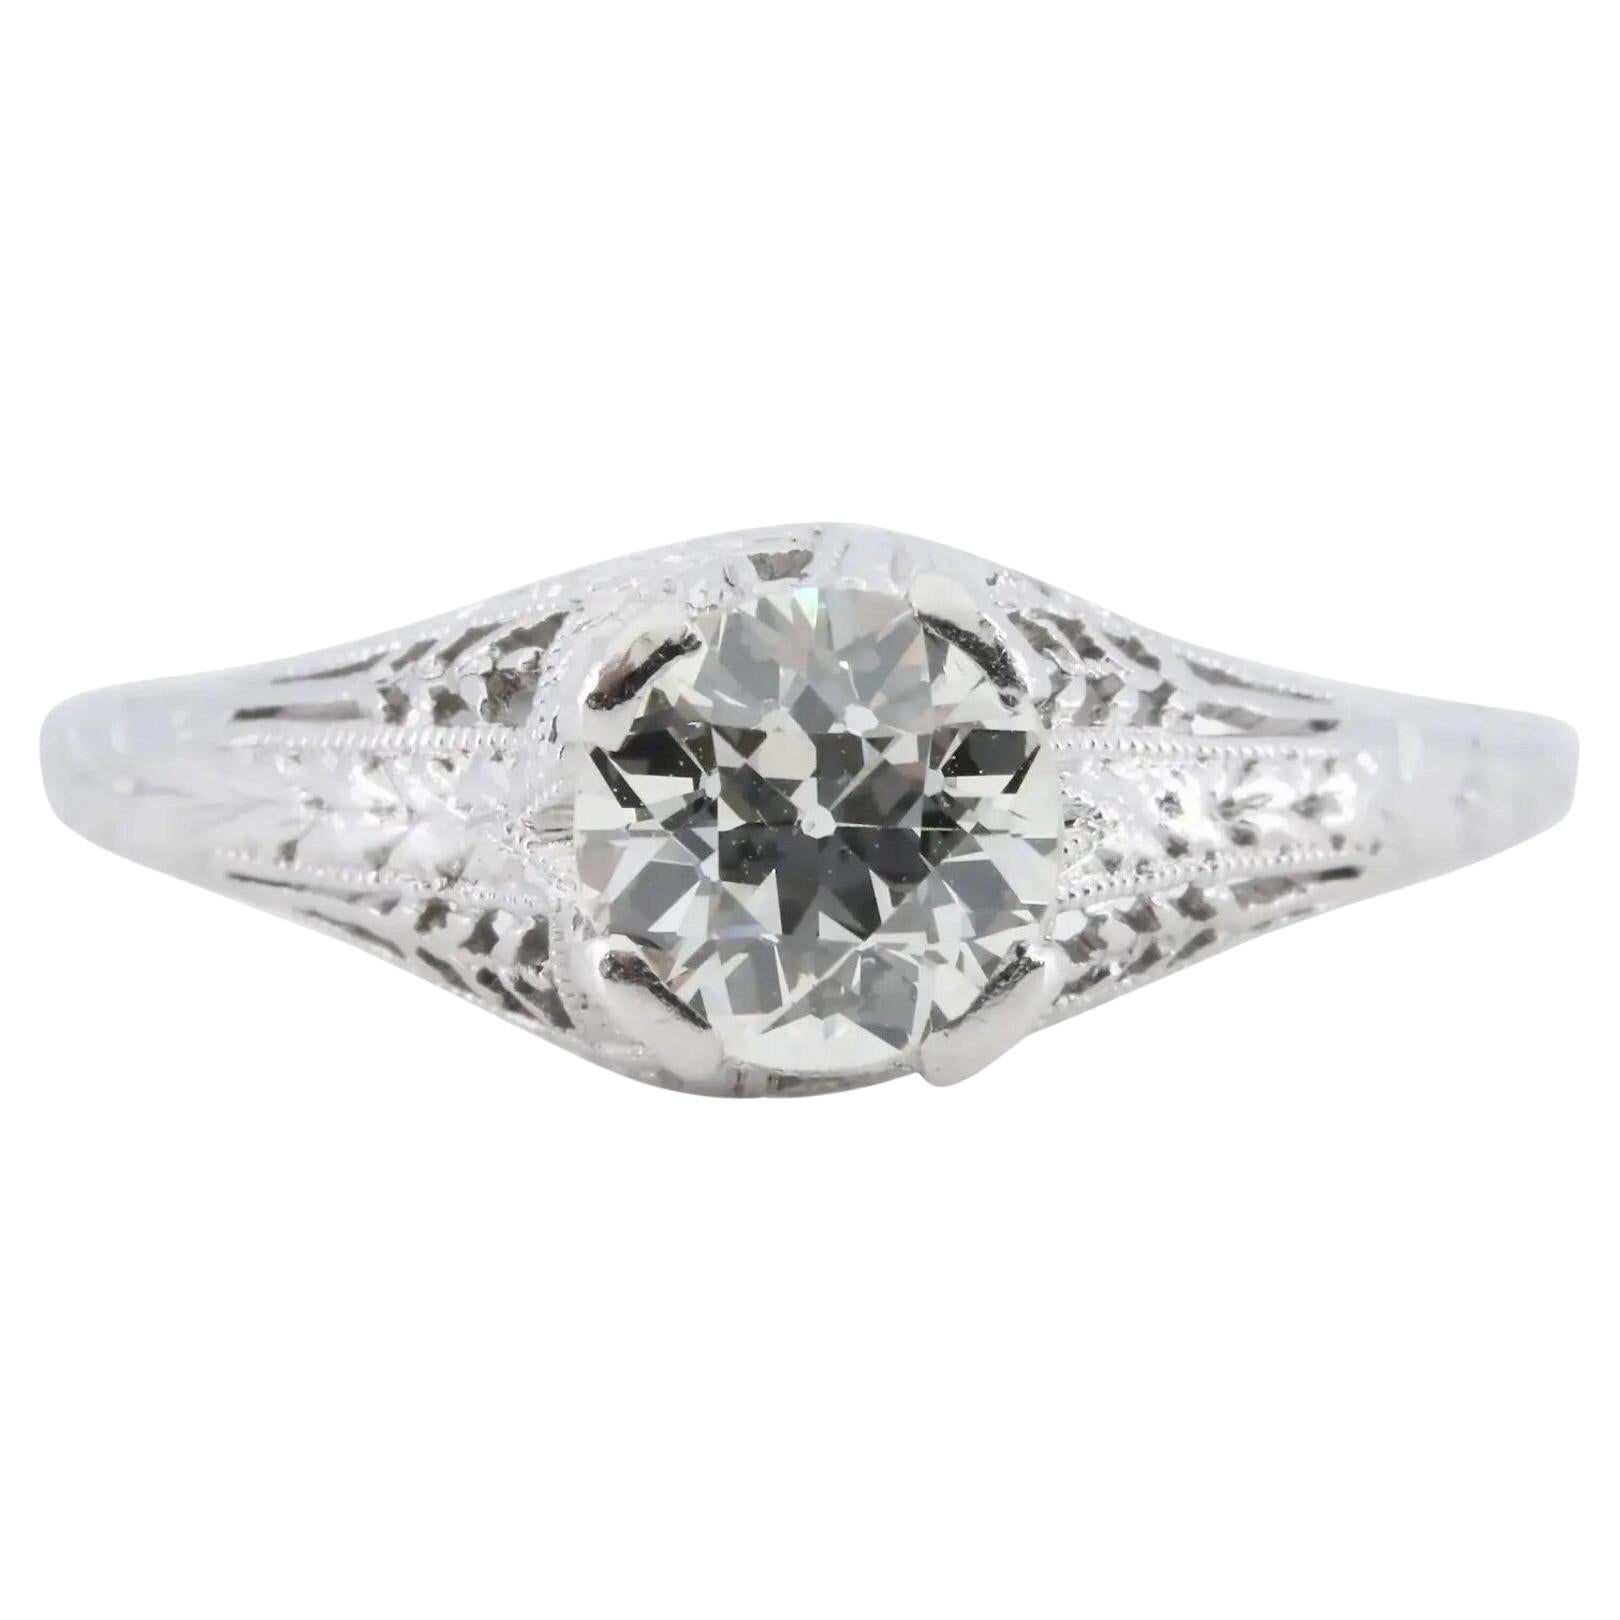 Baskin Bros. Art Deco 0.75ct Diamond Engagement Ring in Platinum